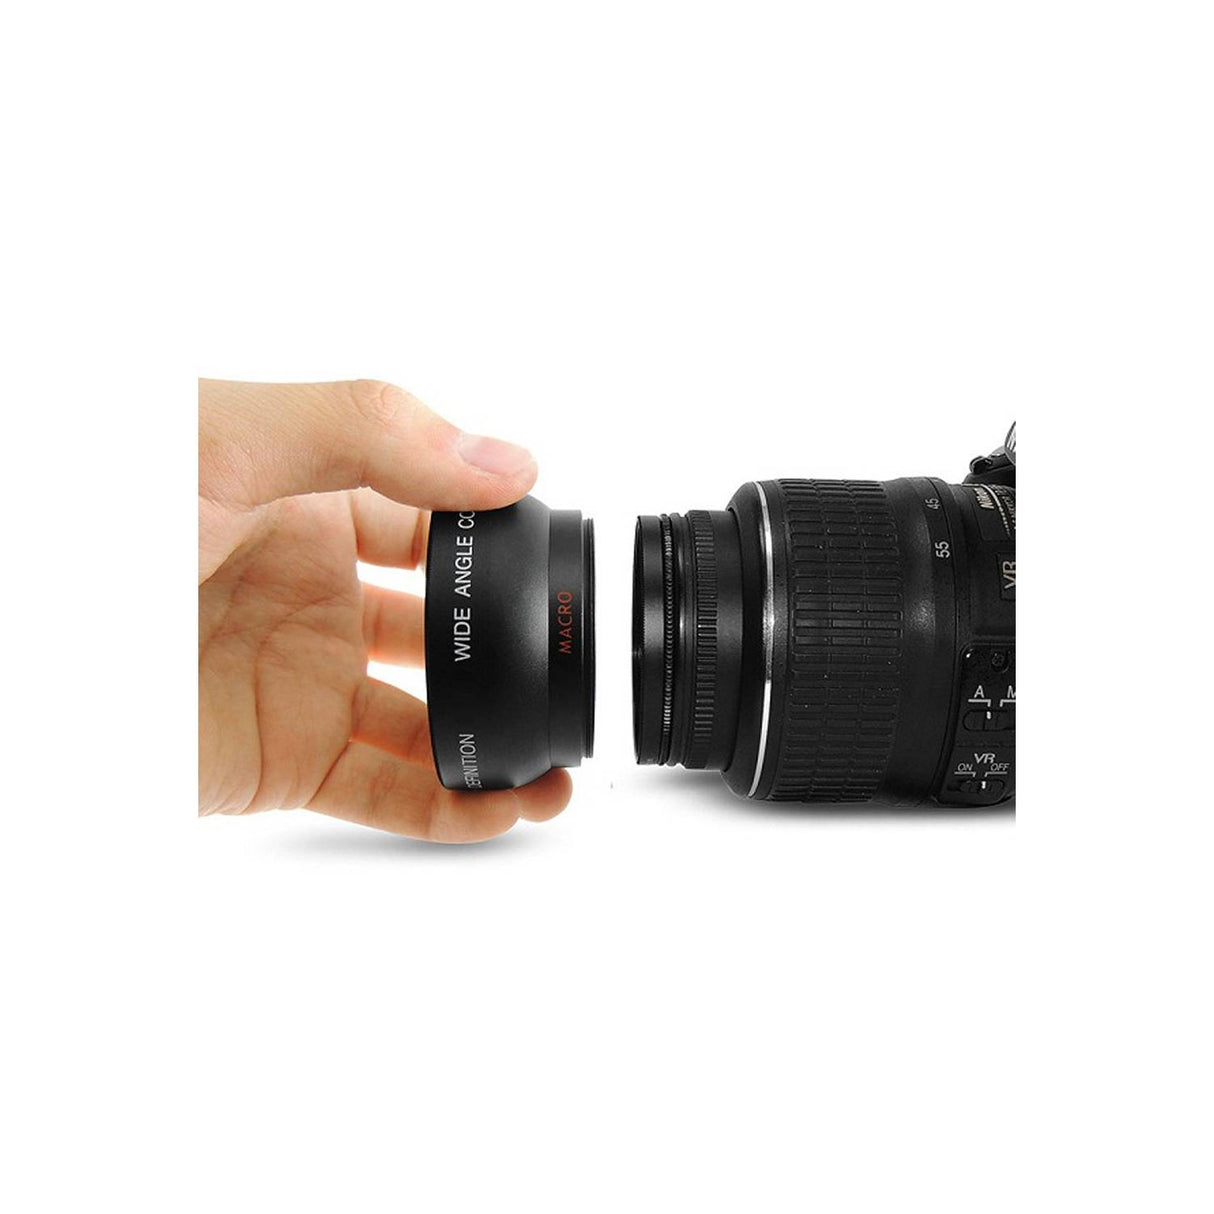 lente gran angular hd 52mm 0.45x con lente macro para camara dslr canon nikon sony pentax 52mm djl